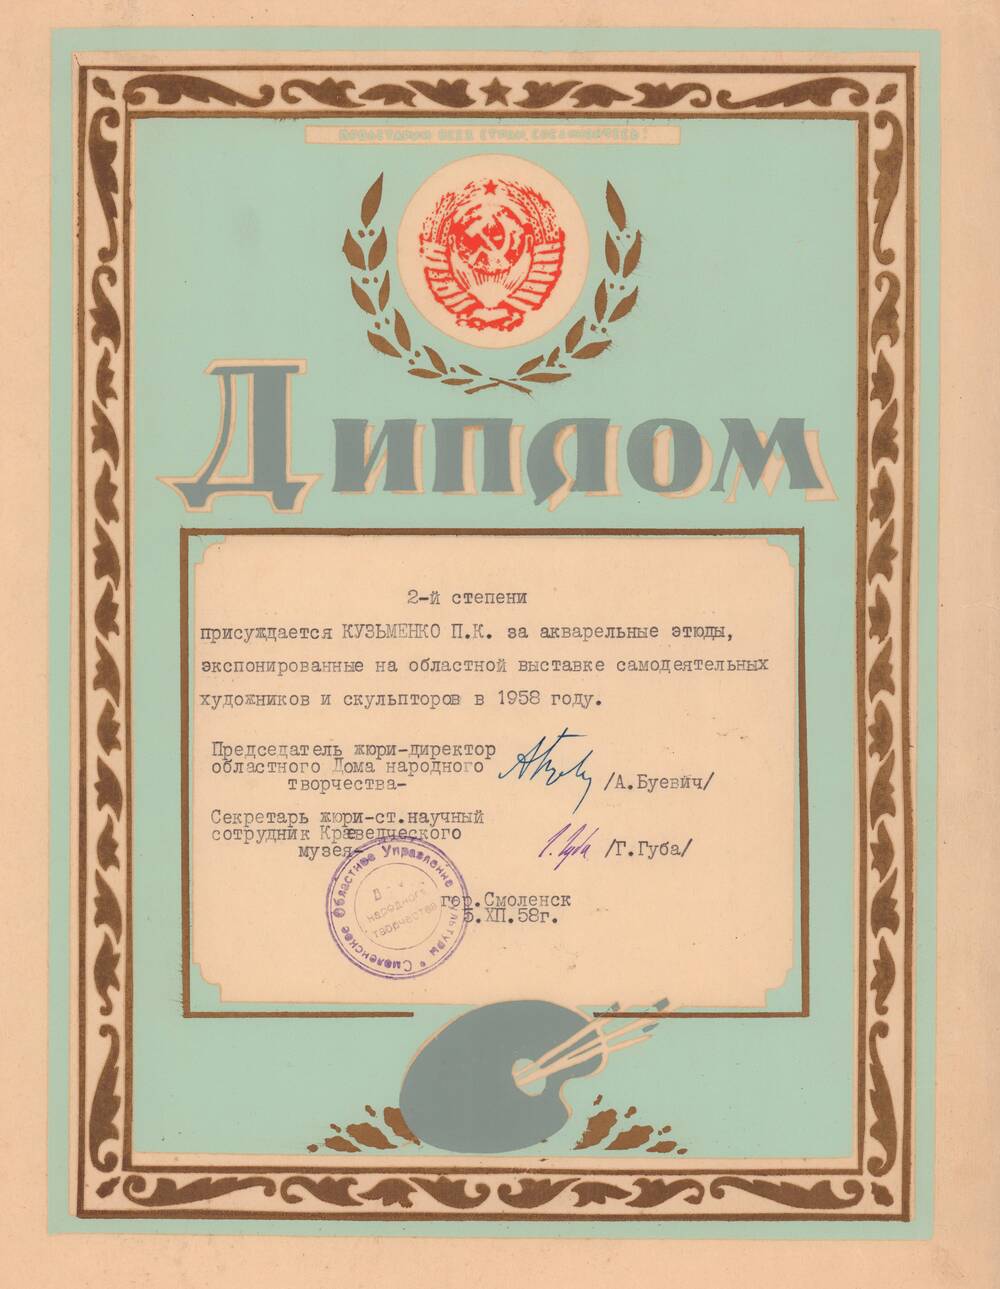 Диплом 2-й степени на имя Кузьменко П. К. за акварельные этюды, экспонированные на областной выставке самодеятельных художников и скульпторов в 1958 году, г. Смоленск. 5 декабря 1958 года.